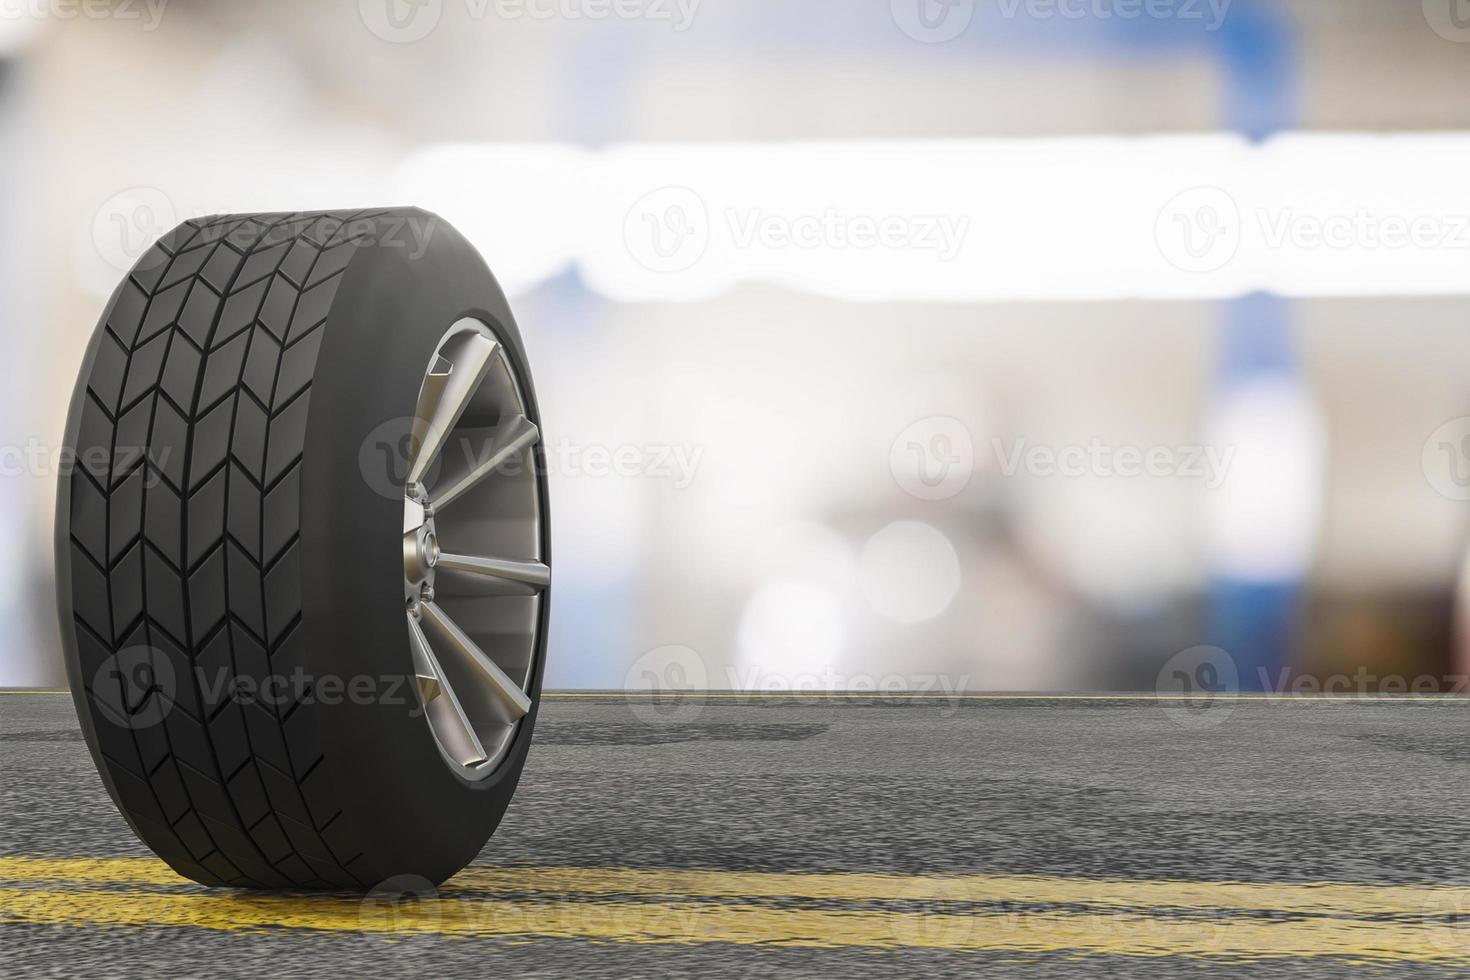 inspection de voiture de pneu mesurer la quantité de pneus en caoutchouc gonflés voiture photo